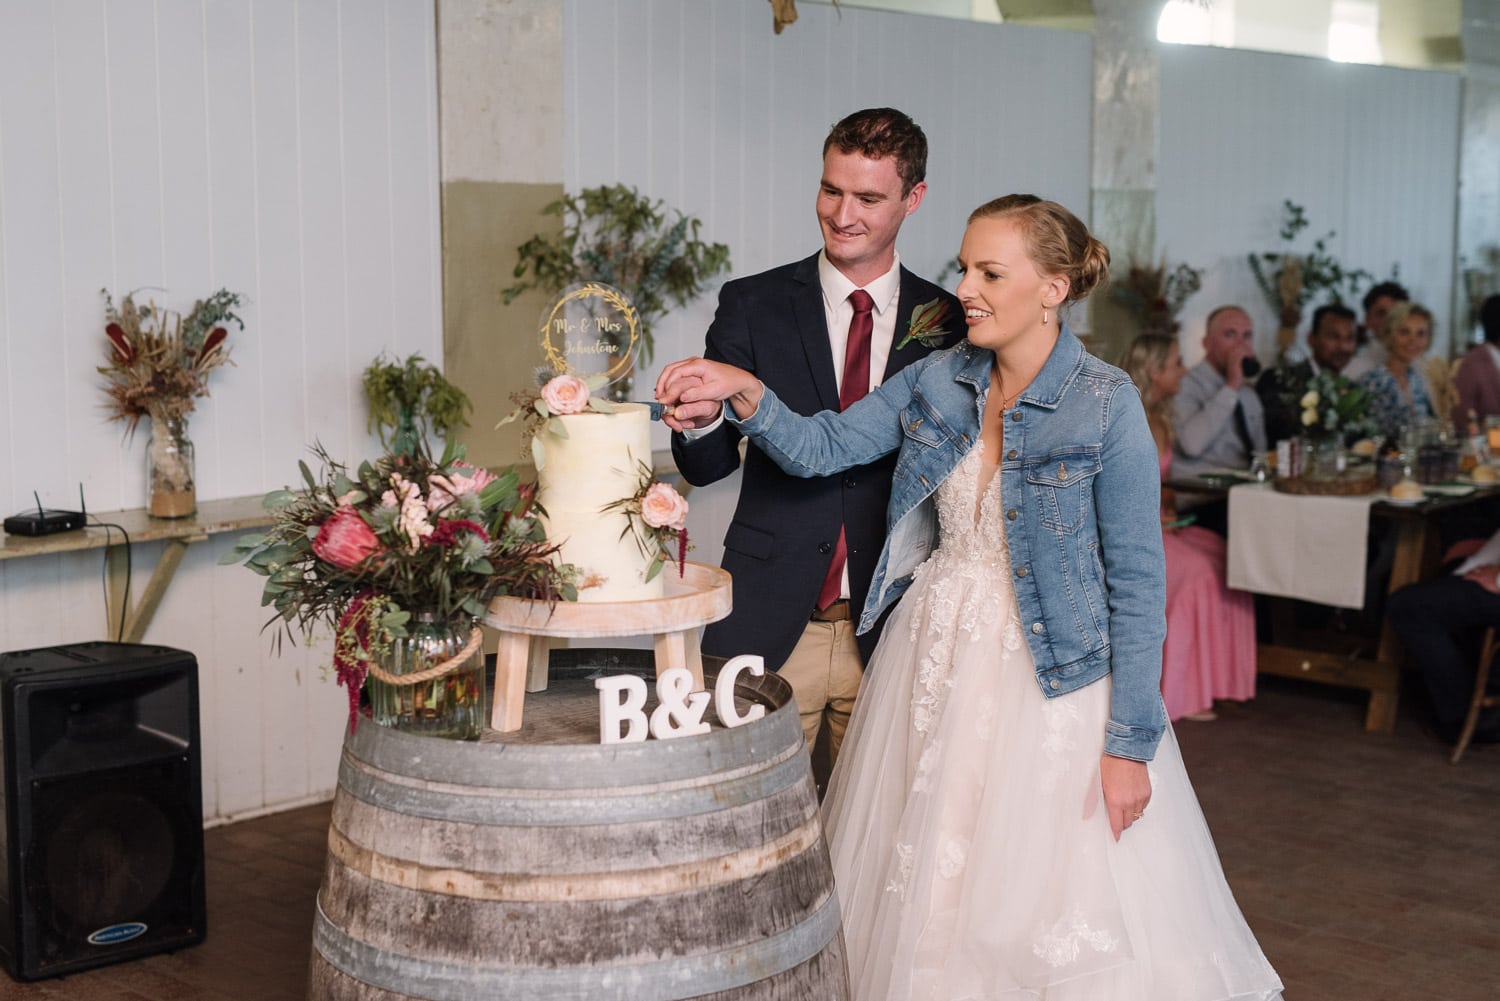 Bride and Groom cut wedding cake in Warrnambool